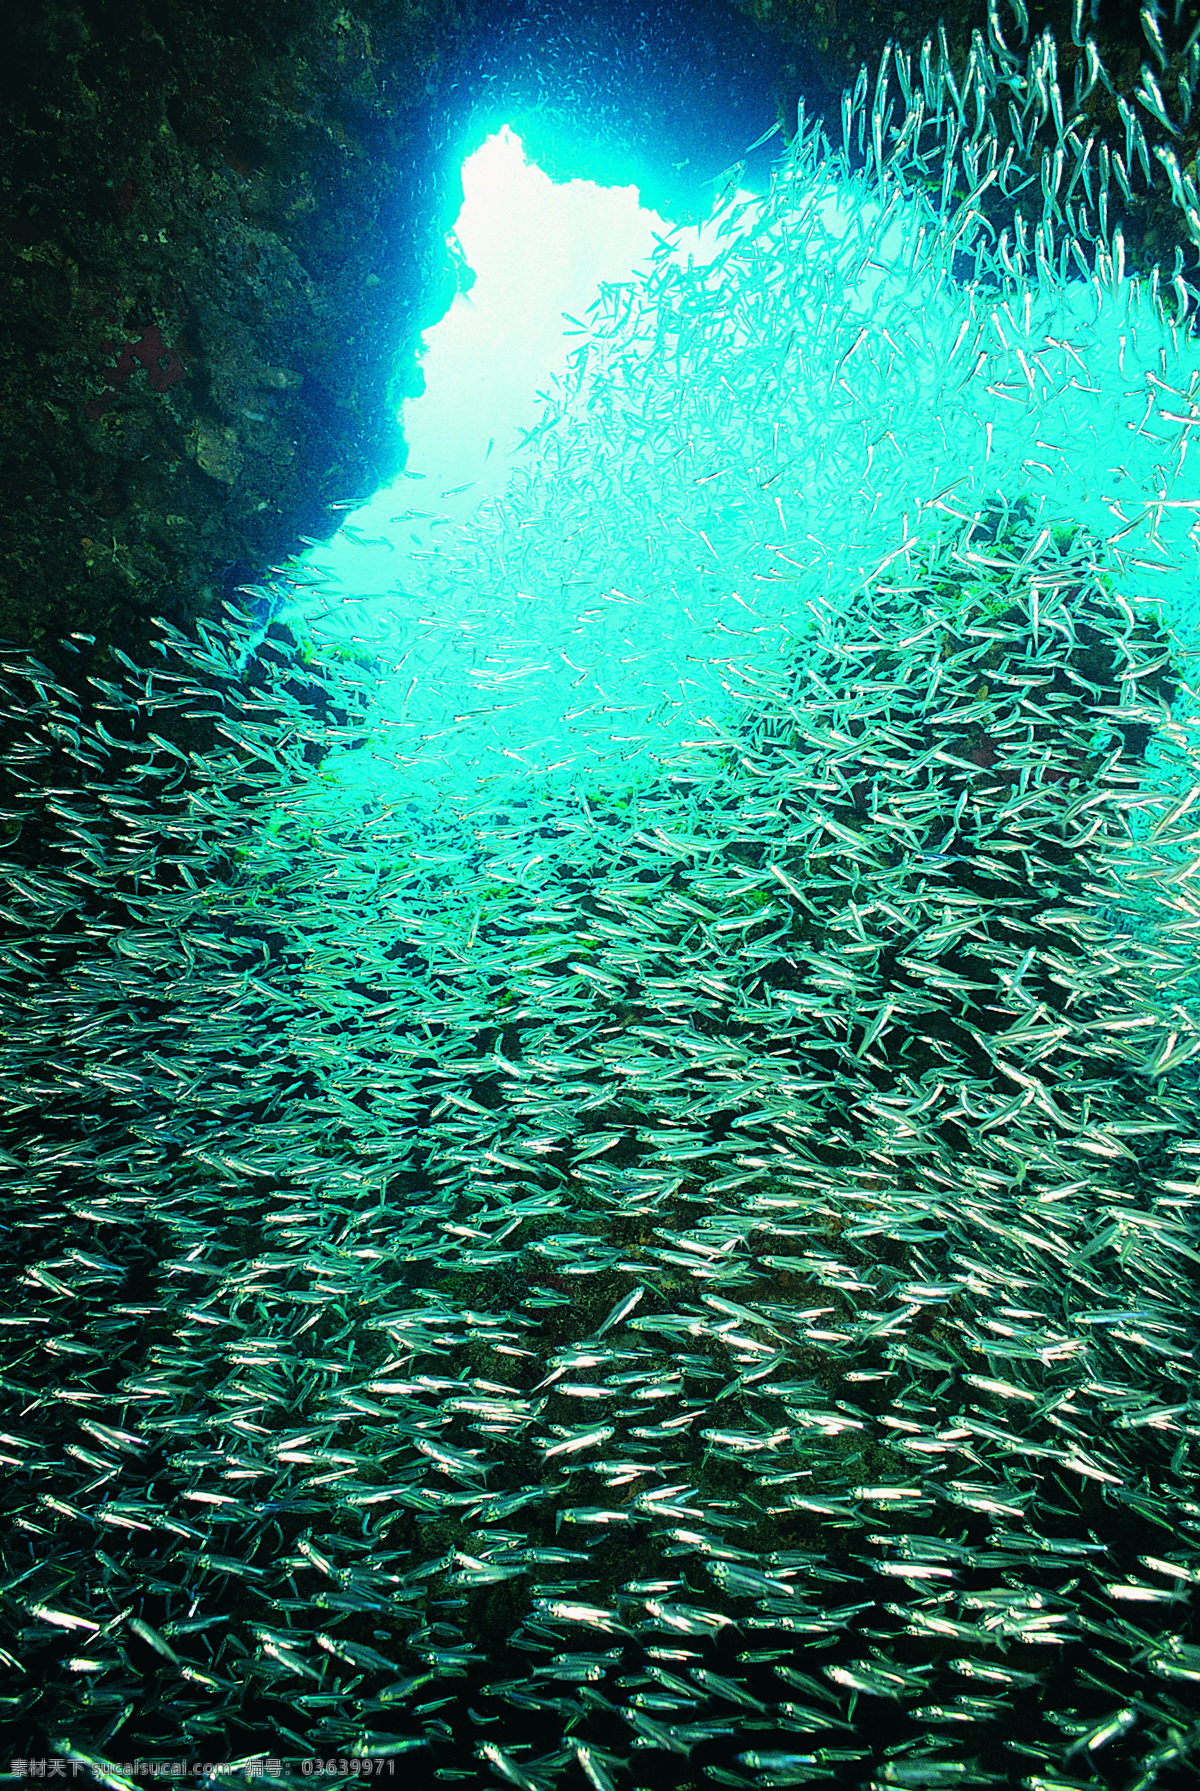 海底世界 海底 海底素材 海底生物 海洋生物 鱼 海底世界图片 漂亮 世界 珊瑚 鱼群 海洋 生物世界